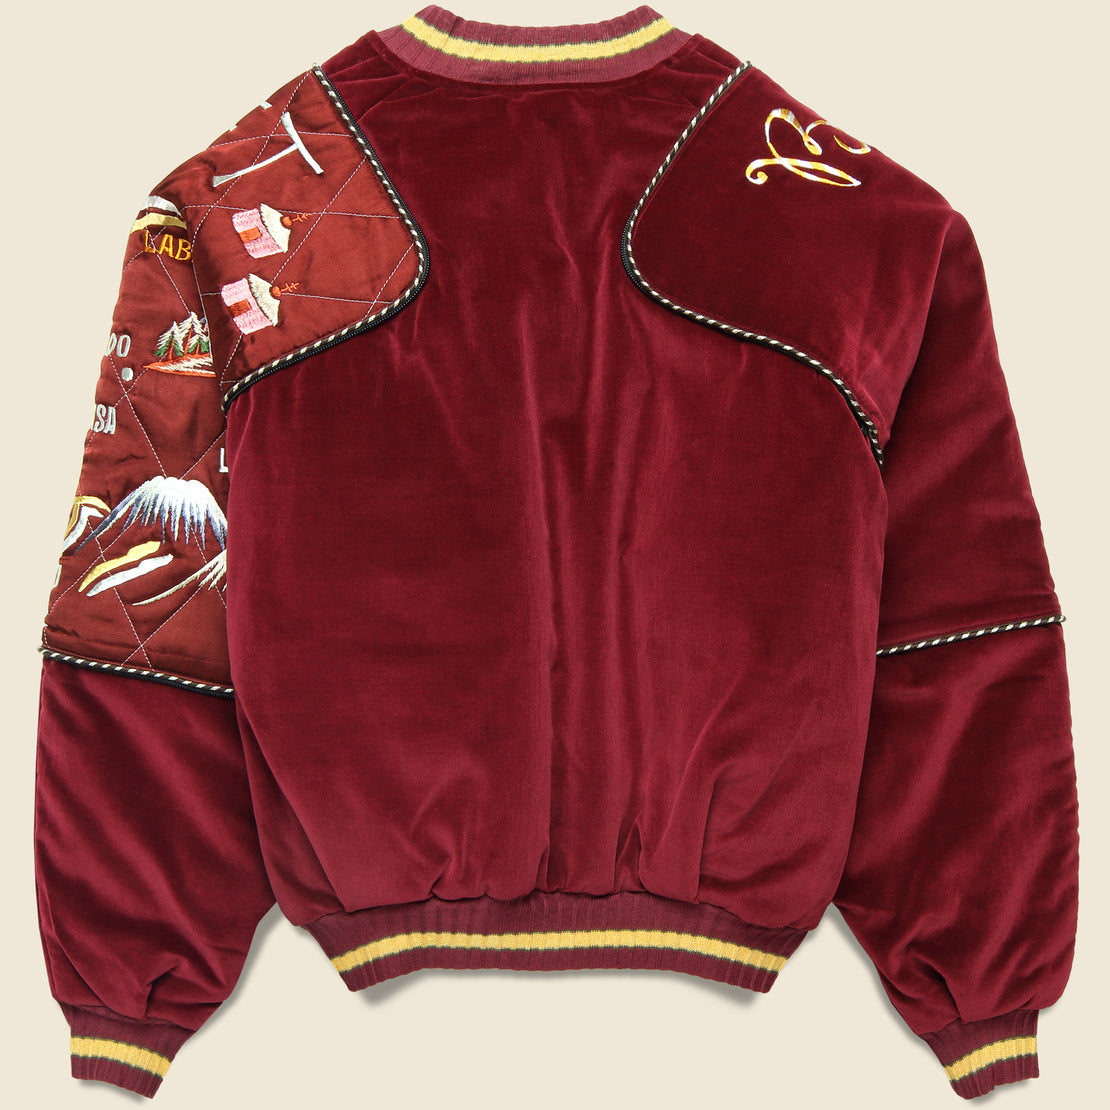 Velveteen SHAM BOMBER JKT (Beautiful TIBET) - Burgundy - Kapital - STAG Provisions - Outerwear - Coat / Jacket